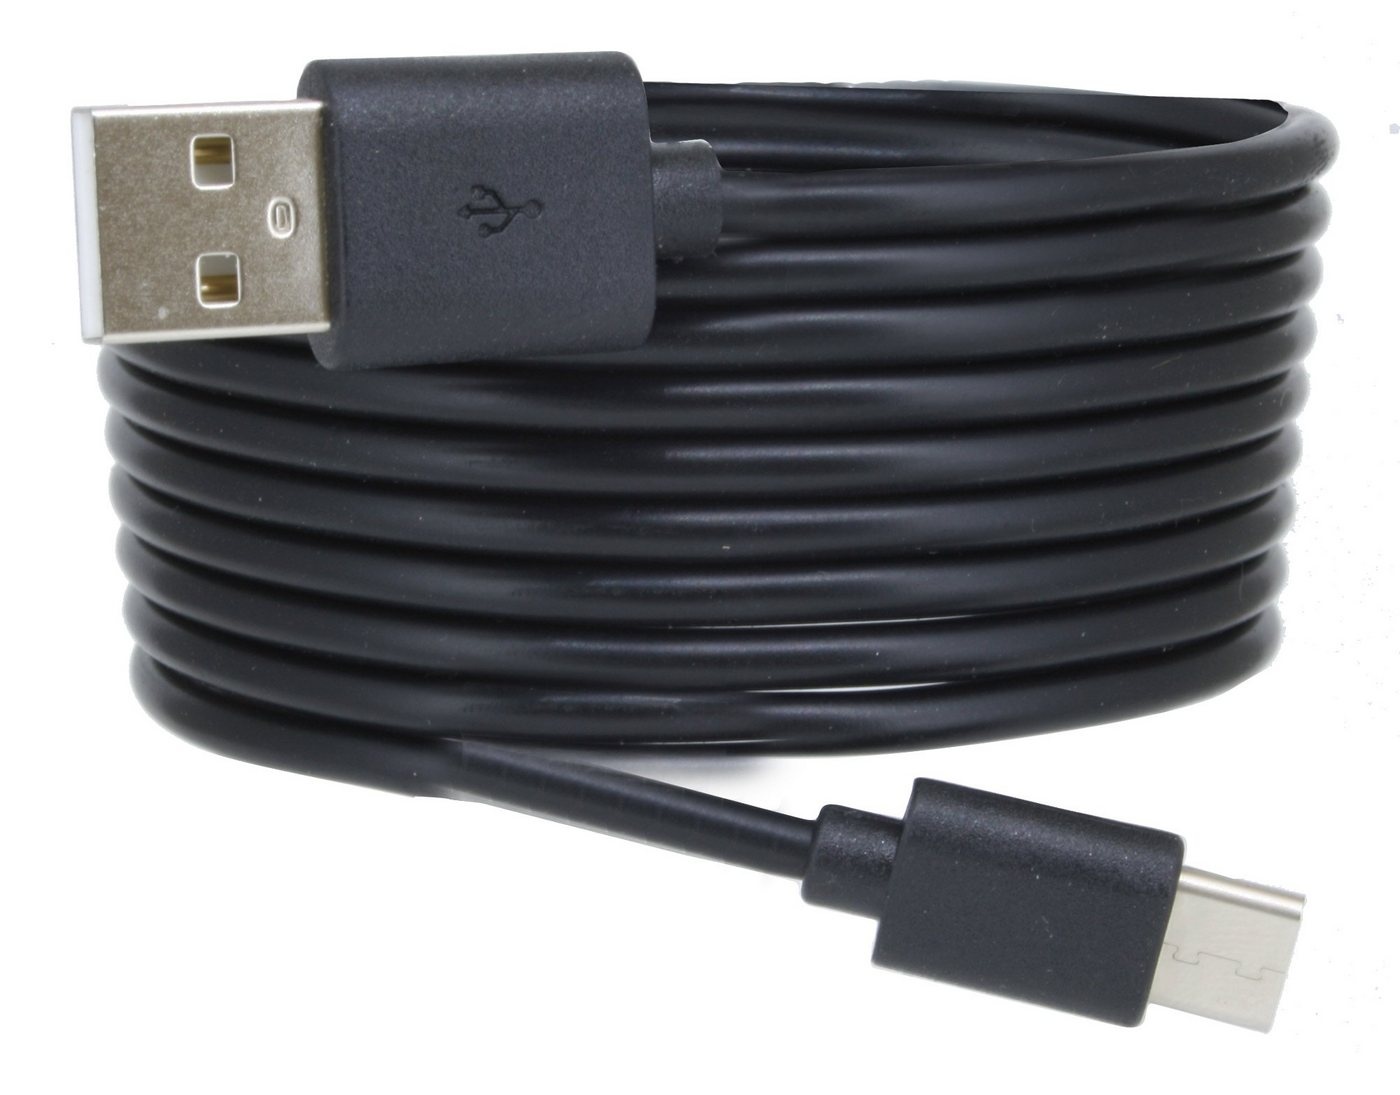 COFI 1453 USB C 3.1 Typ C Ladekabel Datenkabel 3m Extra Lang Smartphone-Kabel schwarz